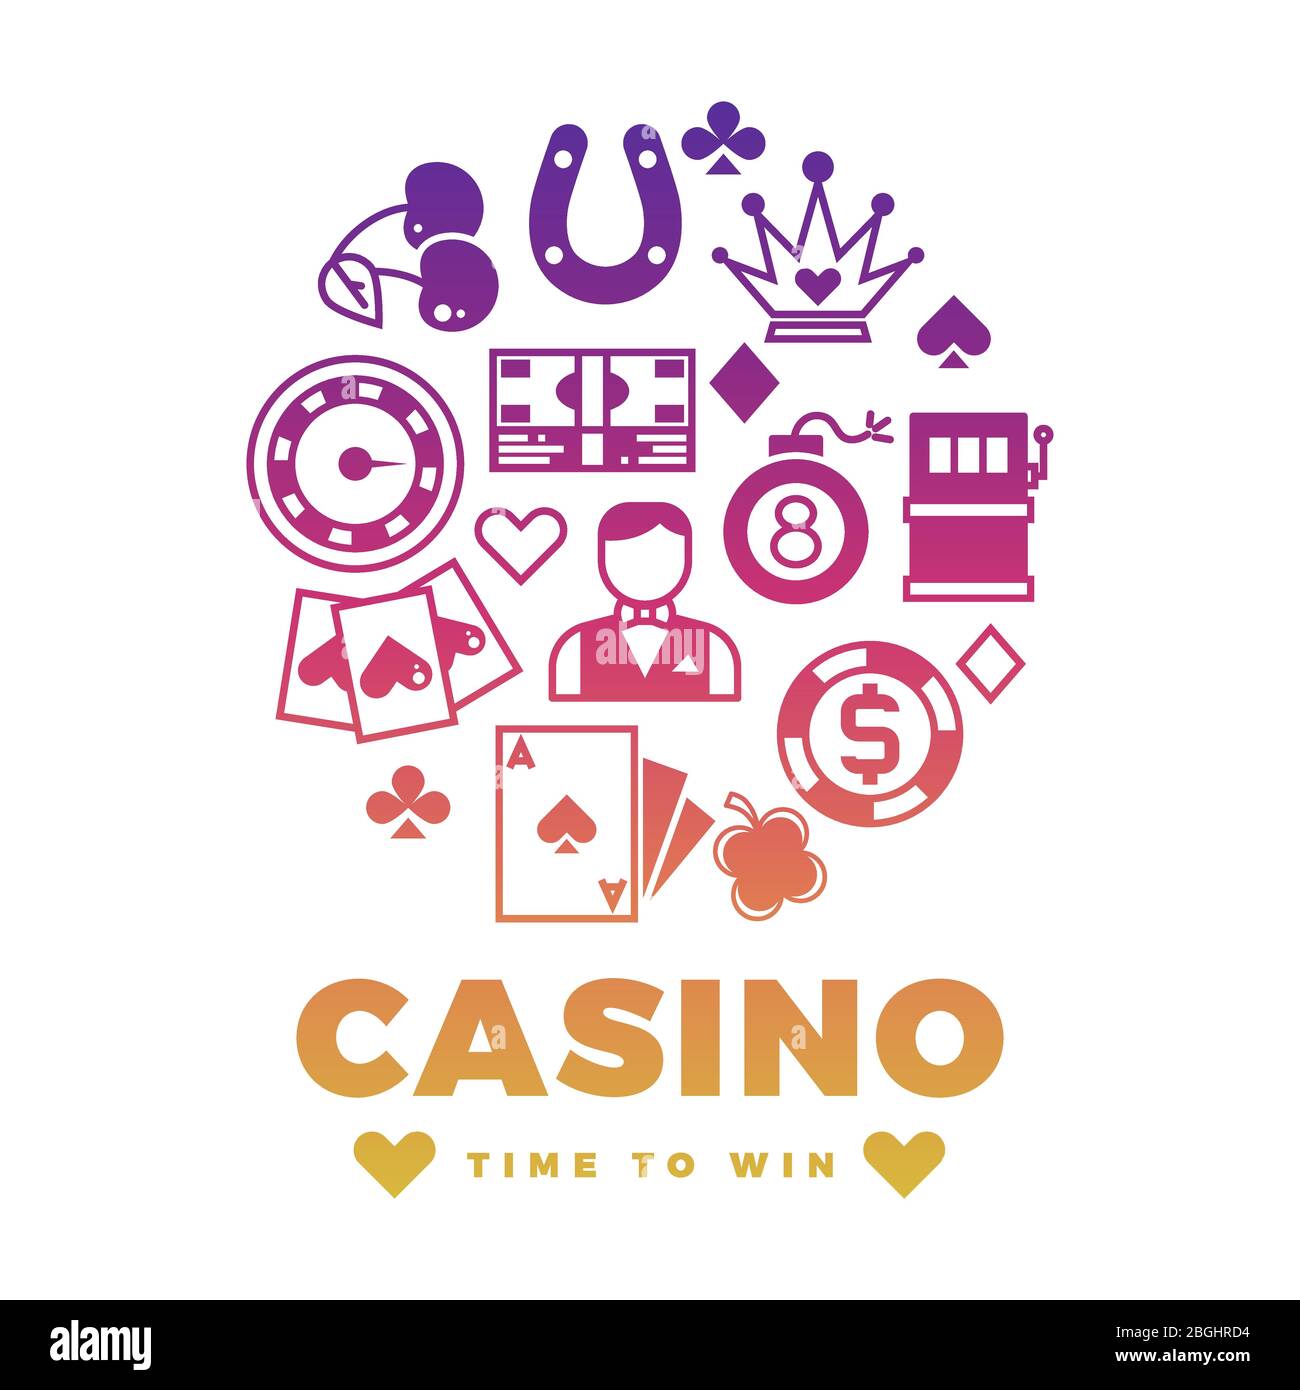 Casino Label Design mit bunten Icons rund-Konzept. Glücksspiel spielen, spielen und gewinnen, Vektorgrafik Stock Vektor